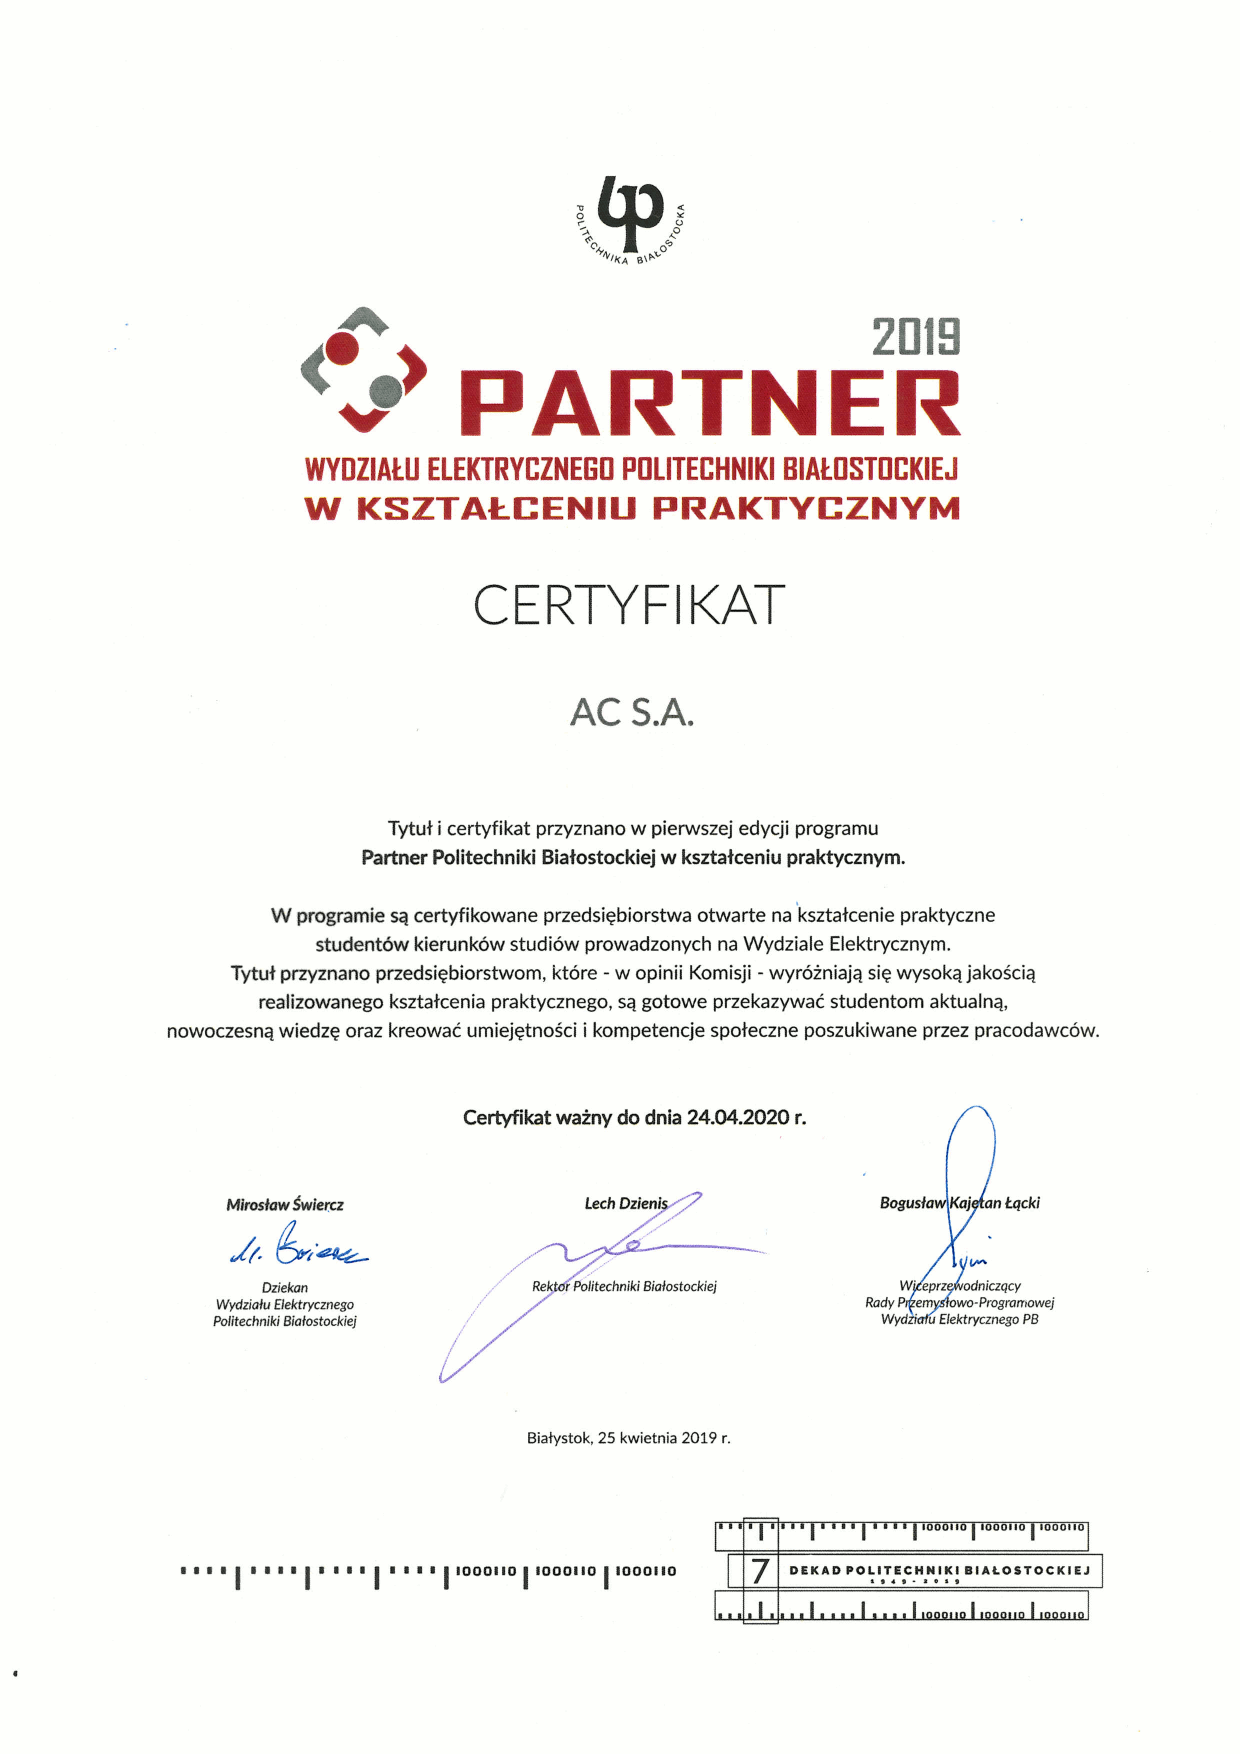 Certyfikat Partnera w kształceniu praktycznym - AC S.A.